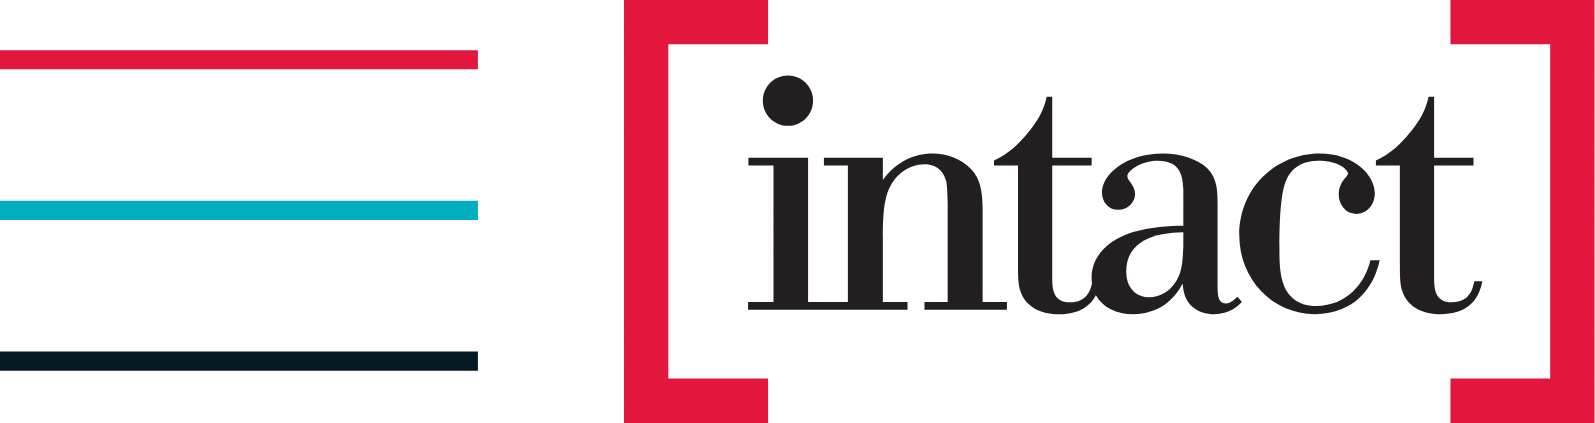 Intact Financial logo large (transparent PNG)